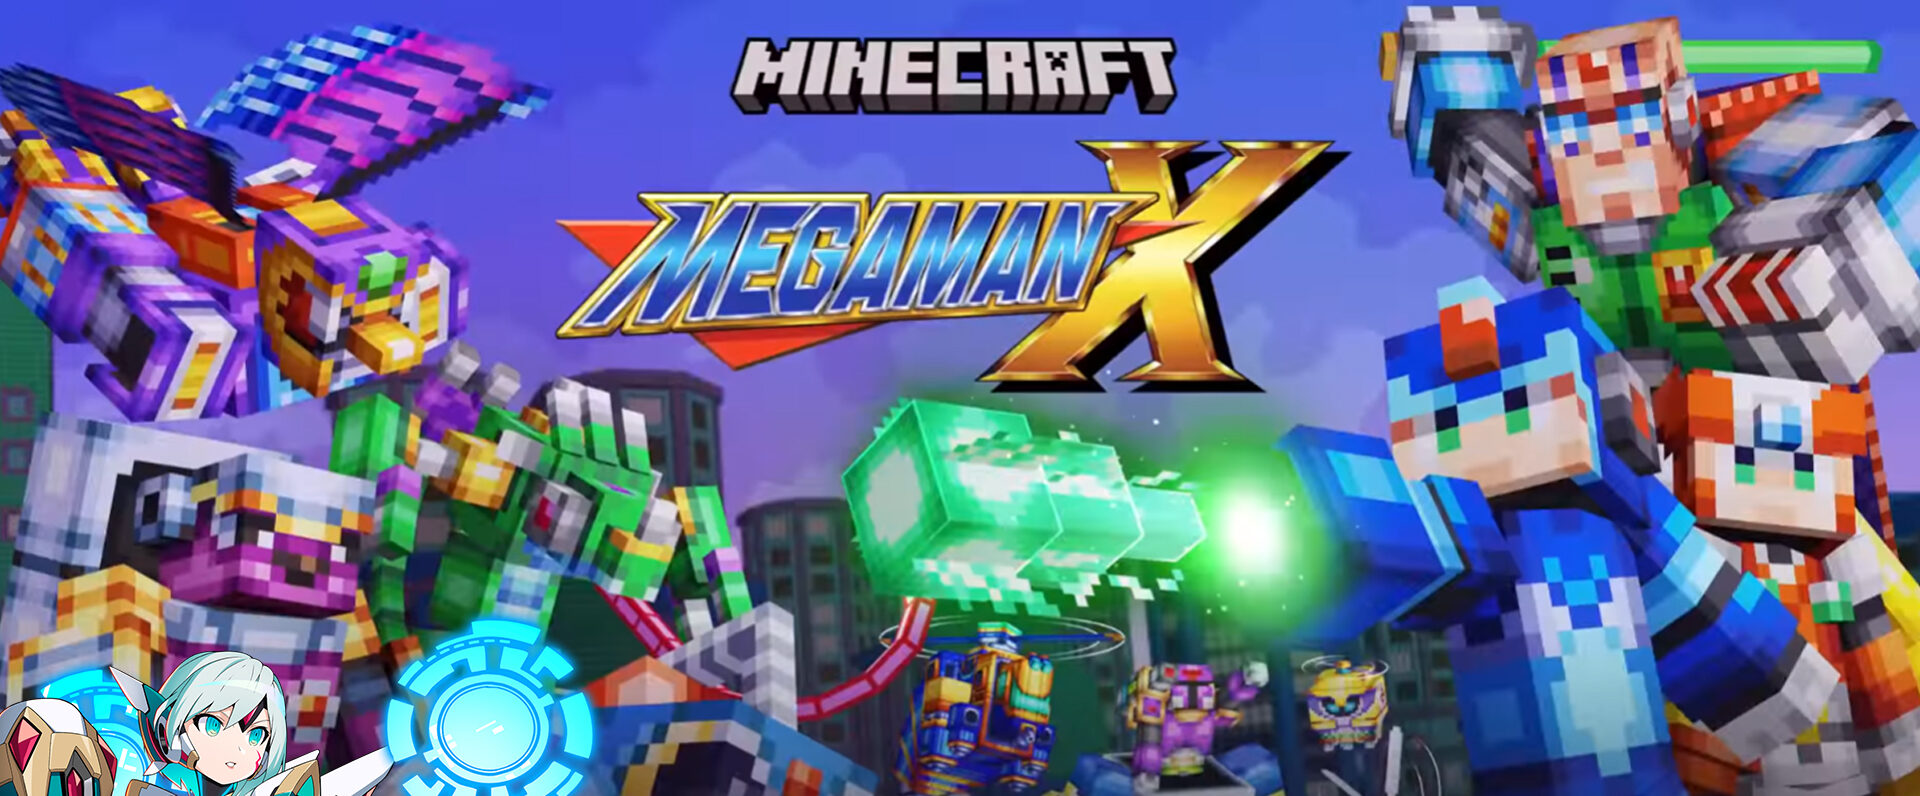 TMMN Reviews Minecraft x Mega Man X DLC